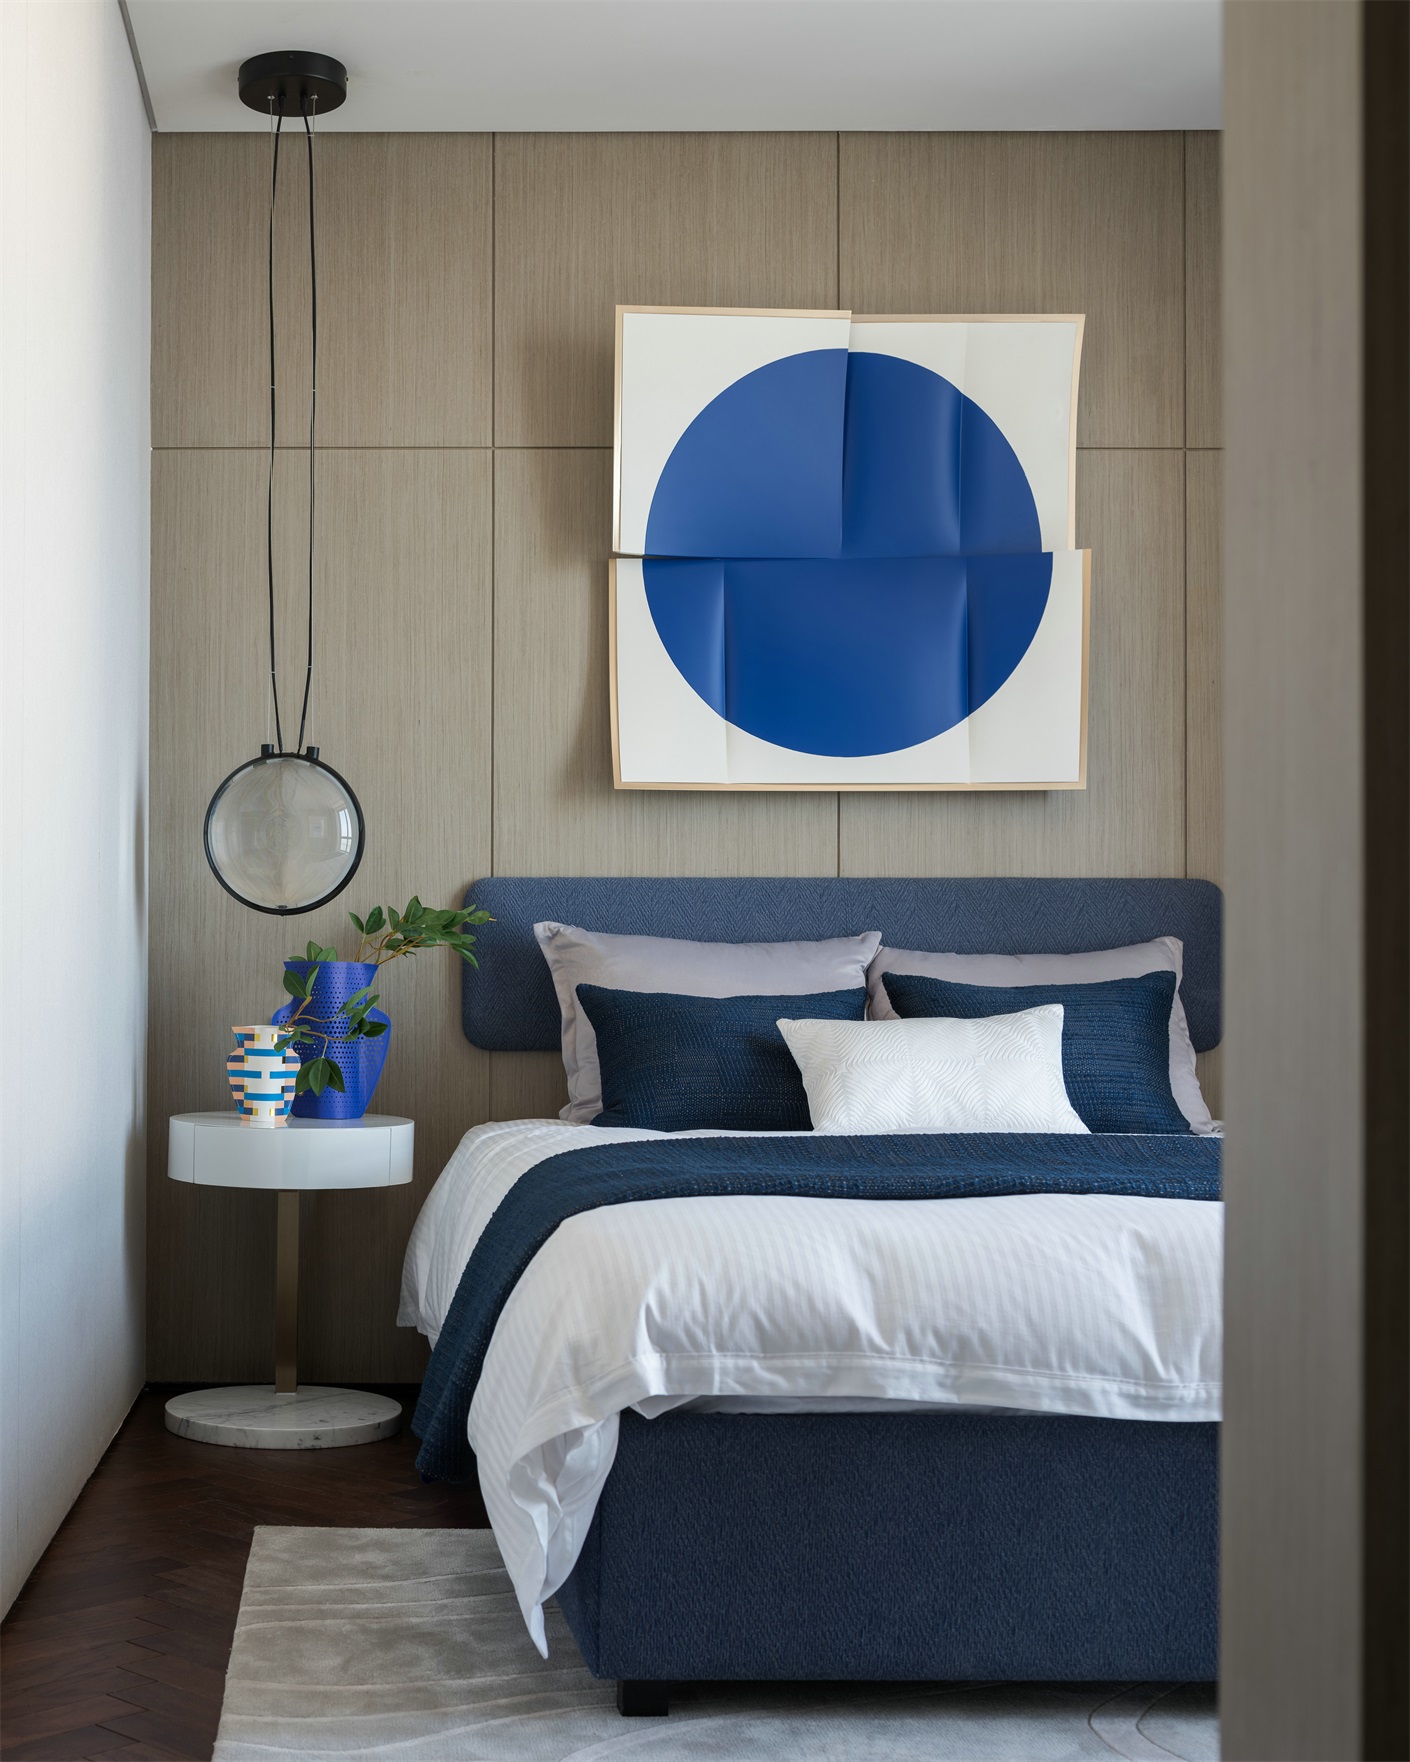 侧卧整体以蓝色与米色相呼应，层次感分明，营造出静谧舒适的氛围。